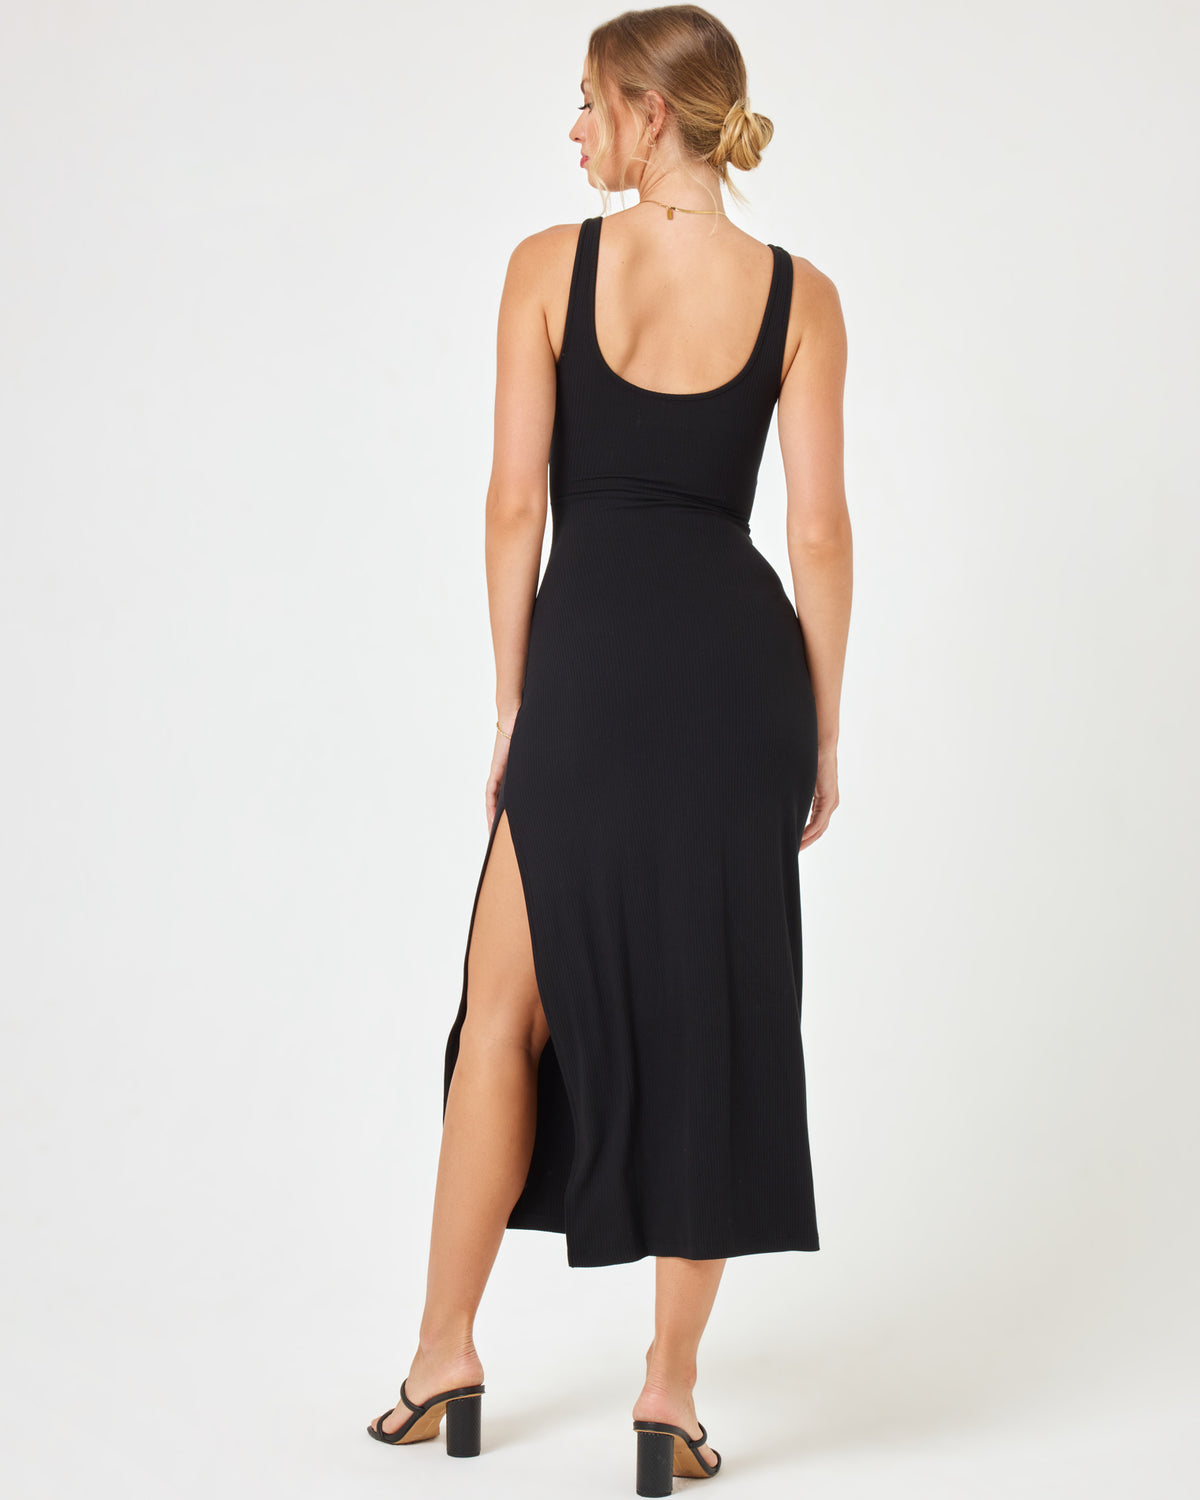 Camille Dress - Black Black | Model: Taylor (size: S)